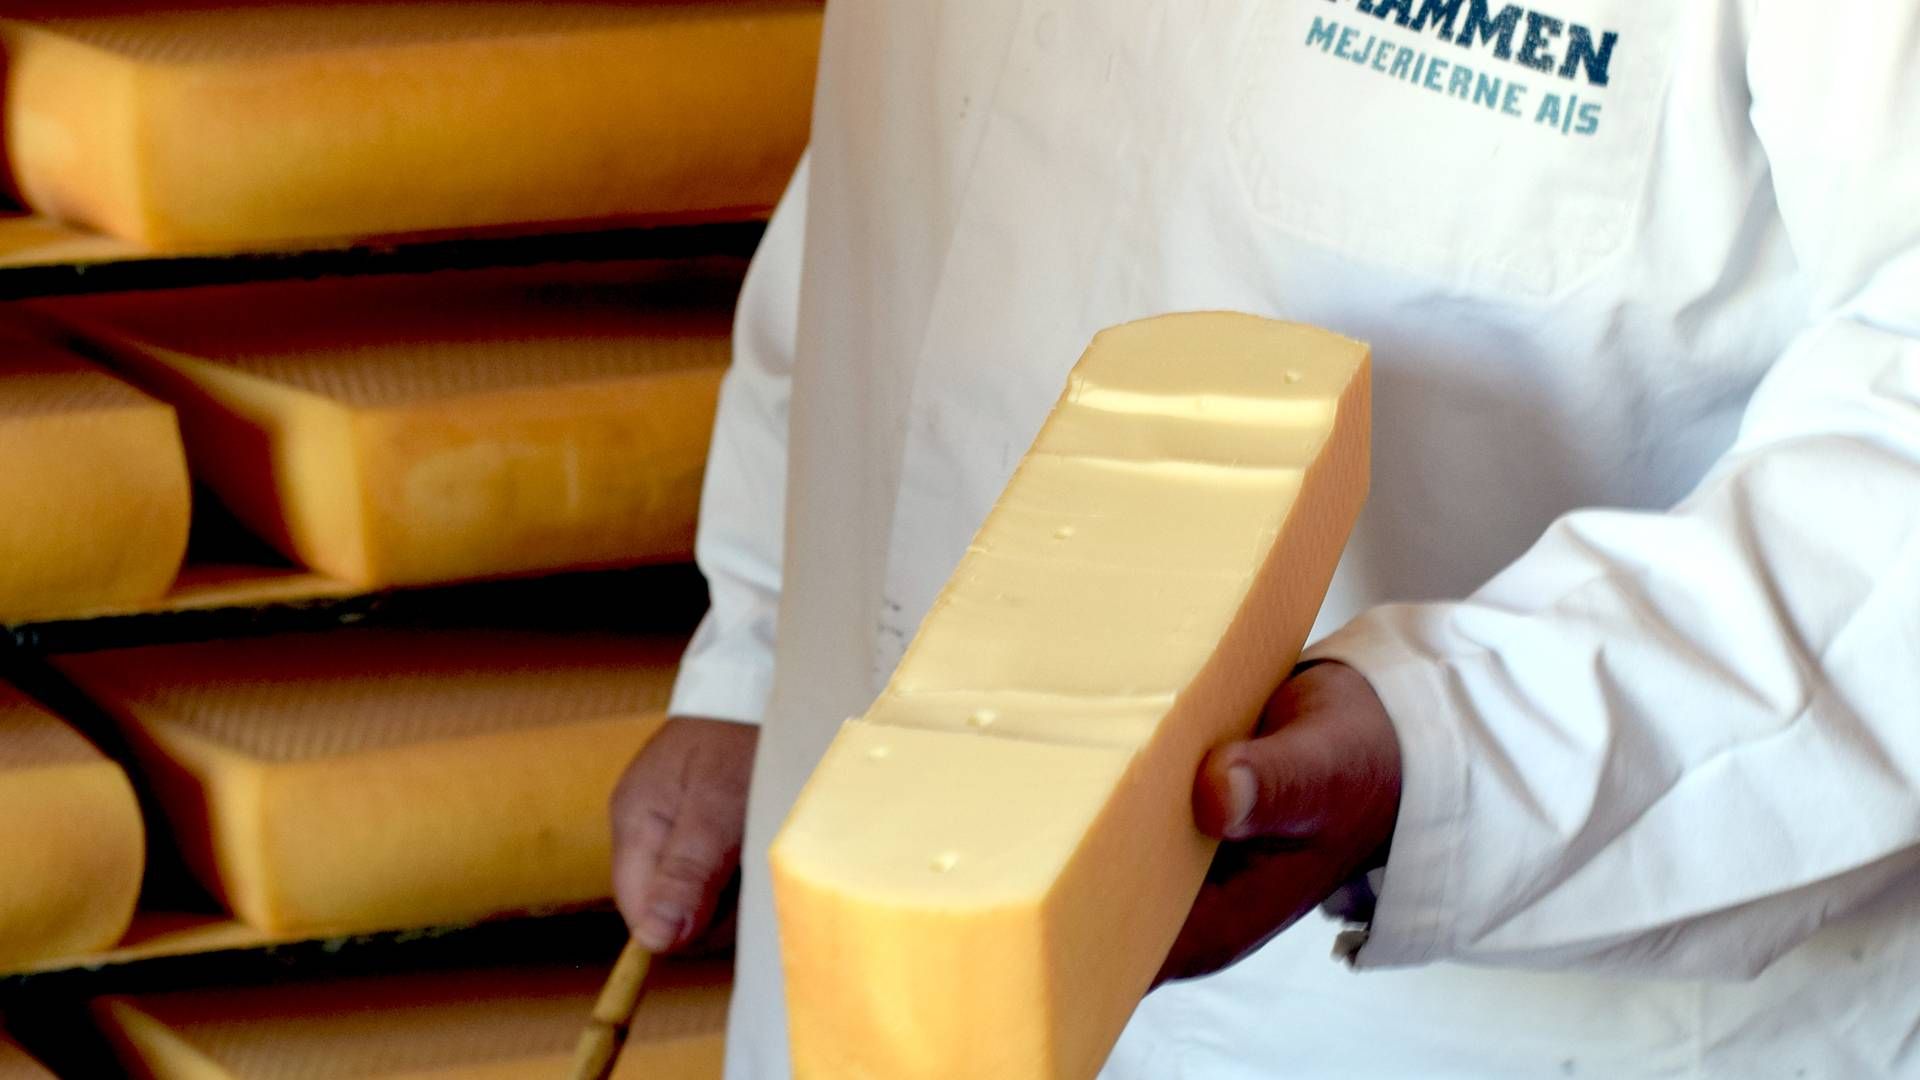 Mammen Mejerierne udvider forretningen med osteproducent. | Foto: Mammen Mejerier